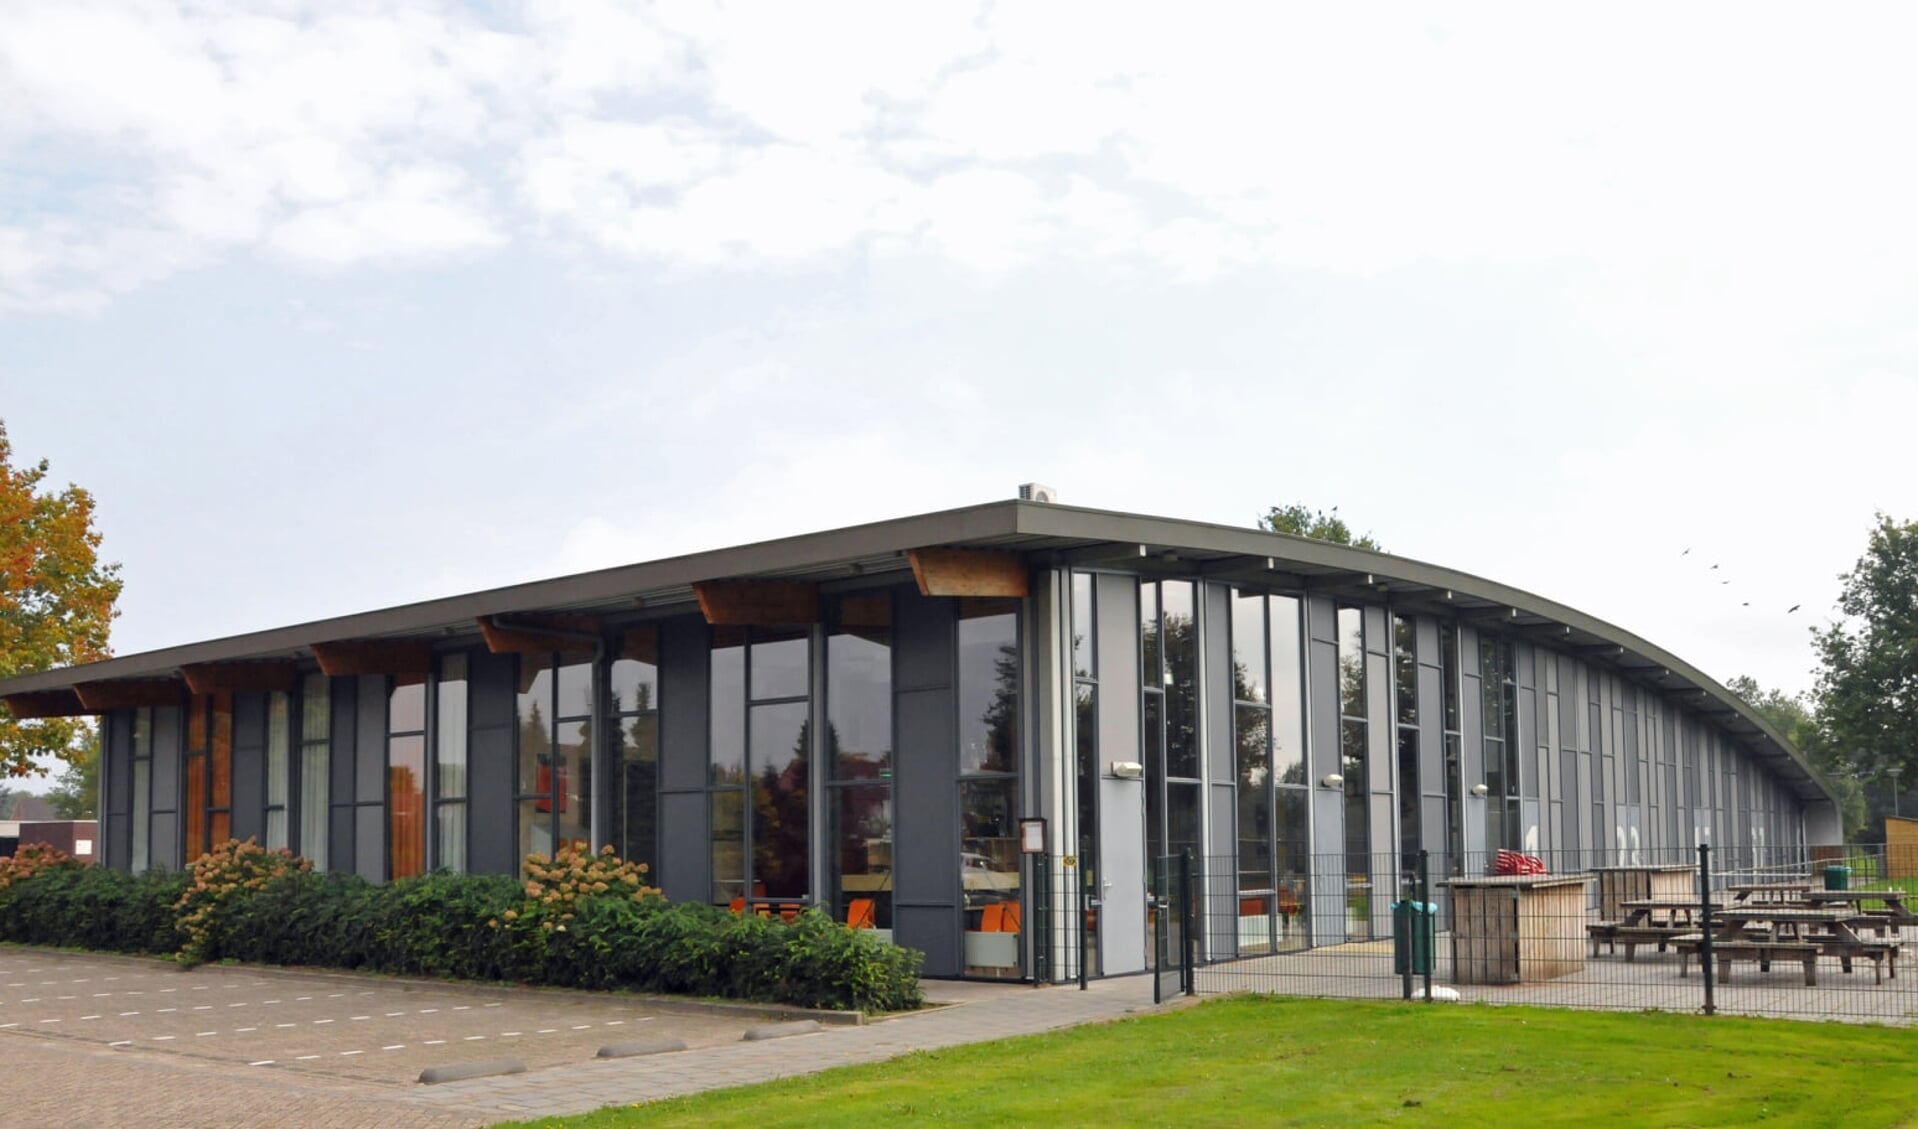 MFA De Spil in Bovensmilde is een van de eerste gebouwen waar de gemeente duurzaamheidsmaatregelen wil nemen (archieffoto). 